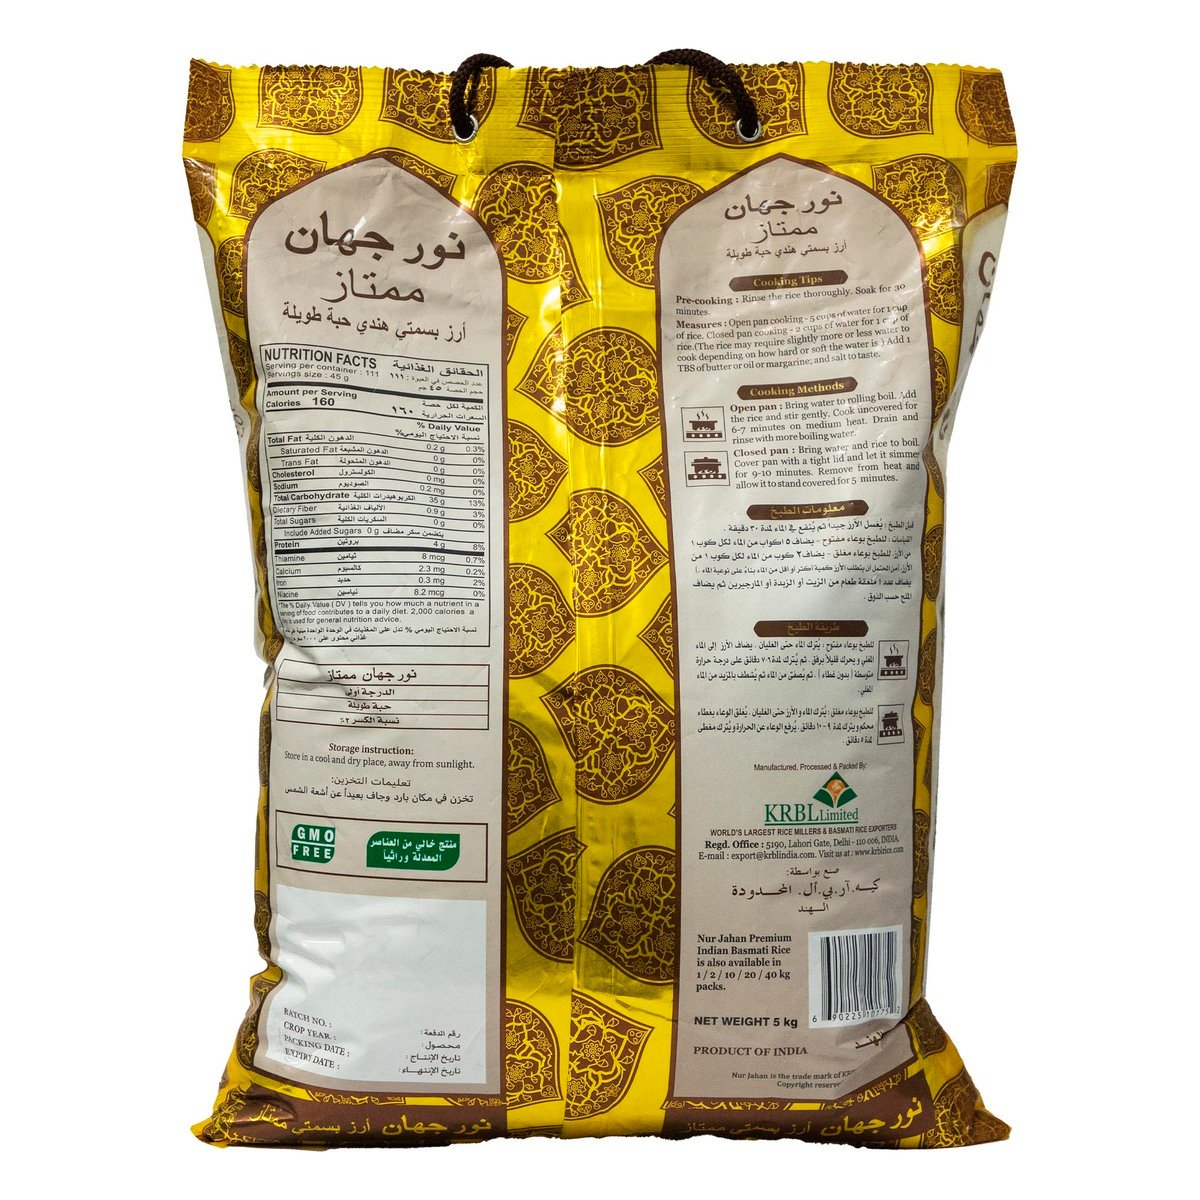 Nurjahan Premium Indian Basmati Long Grain 5 kg